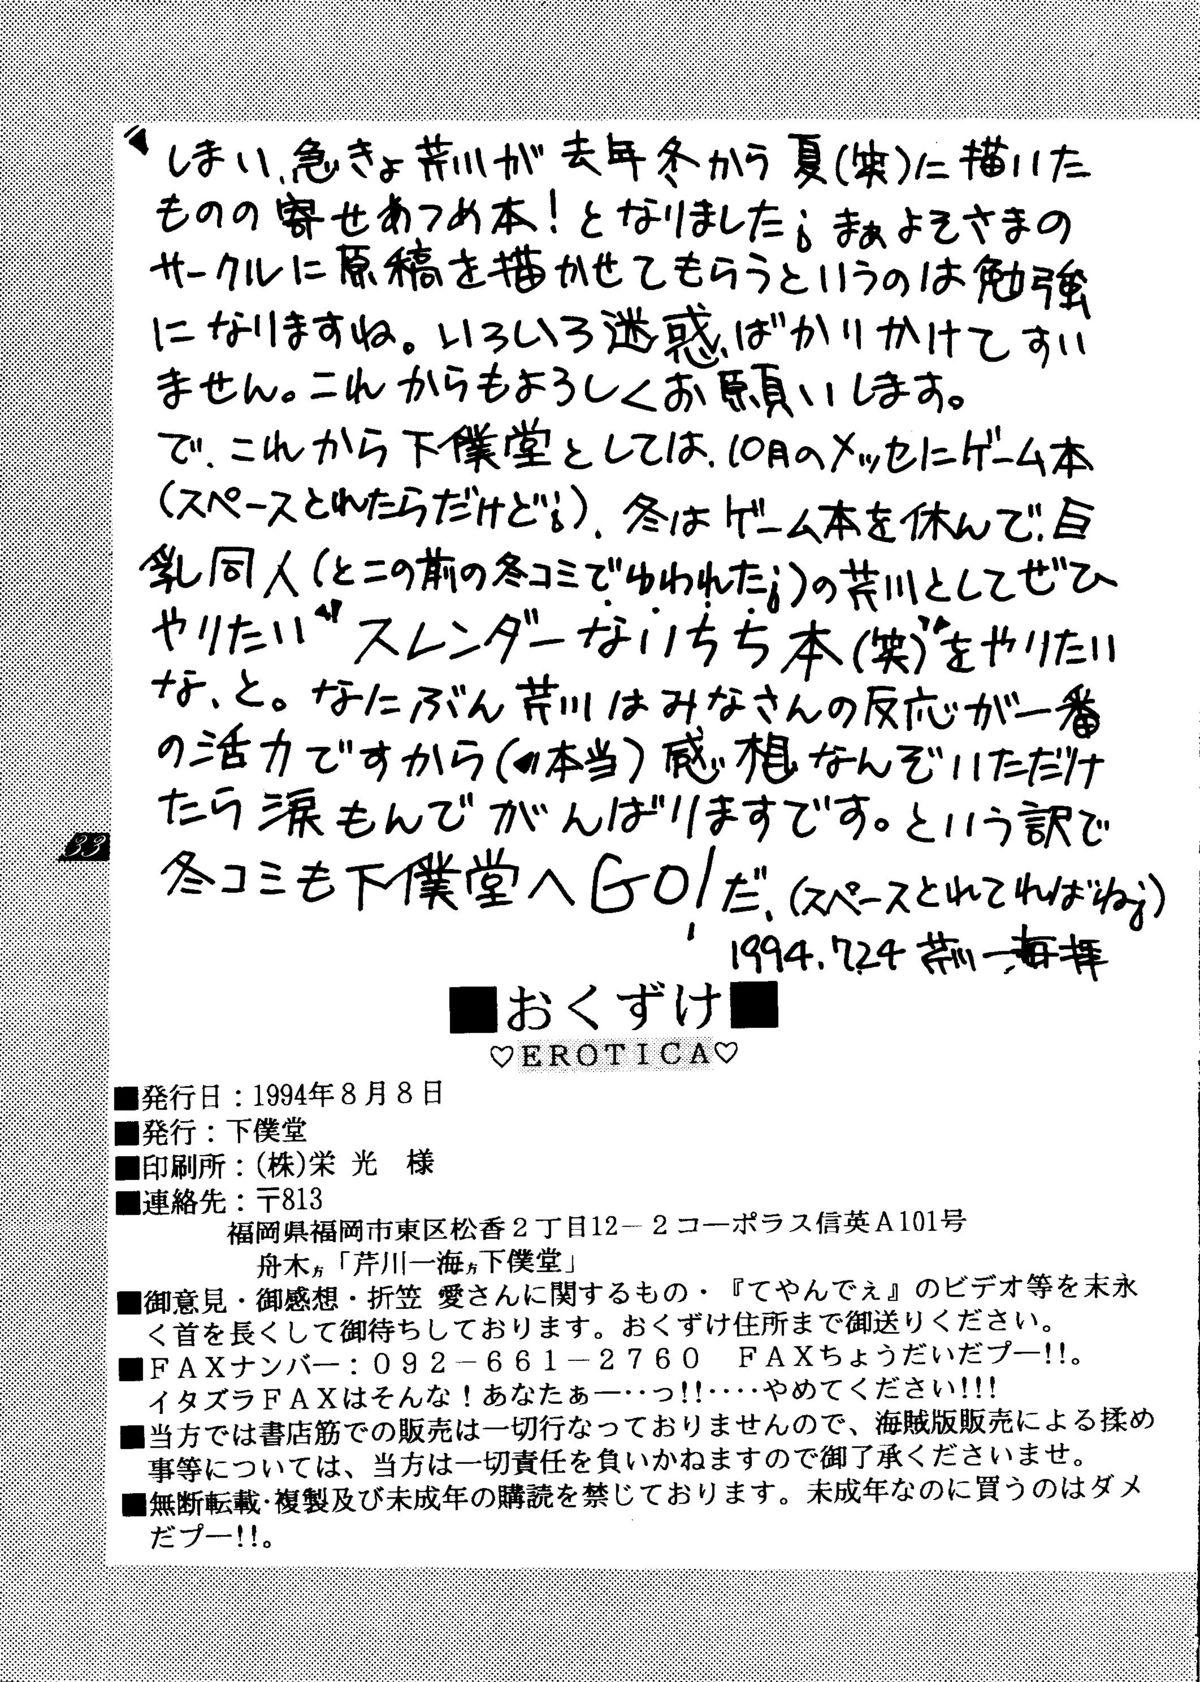 Sucking Cocks Erotica Vol. 3 - King of fighters Samurai spirits Tenchi muyo Gozando - Page 32